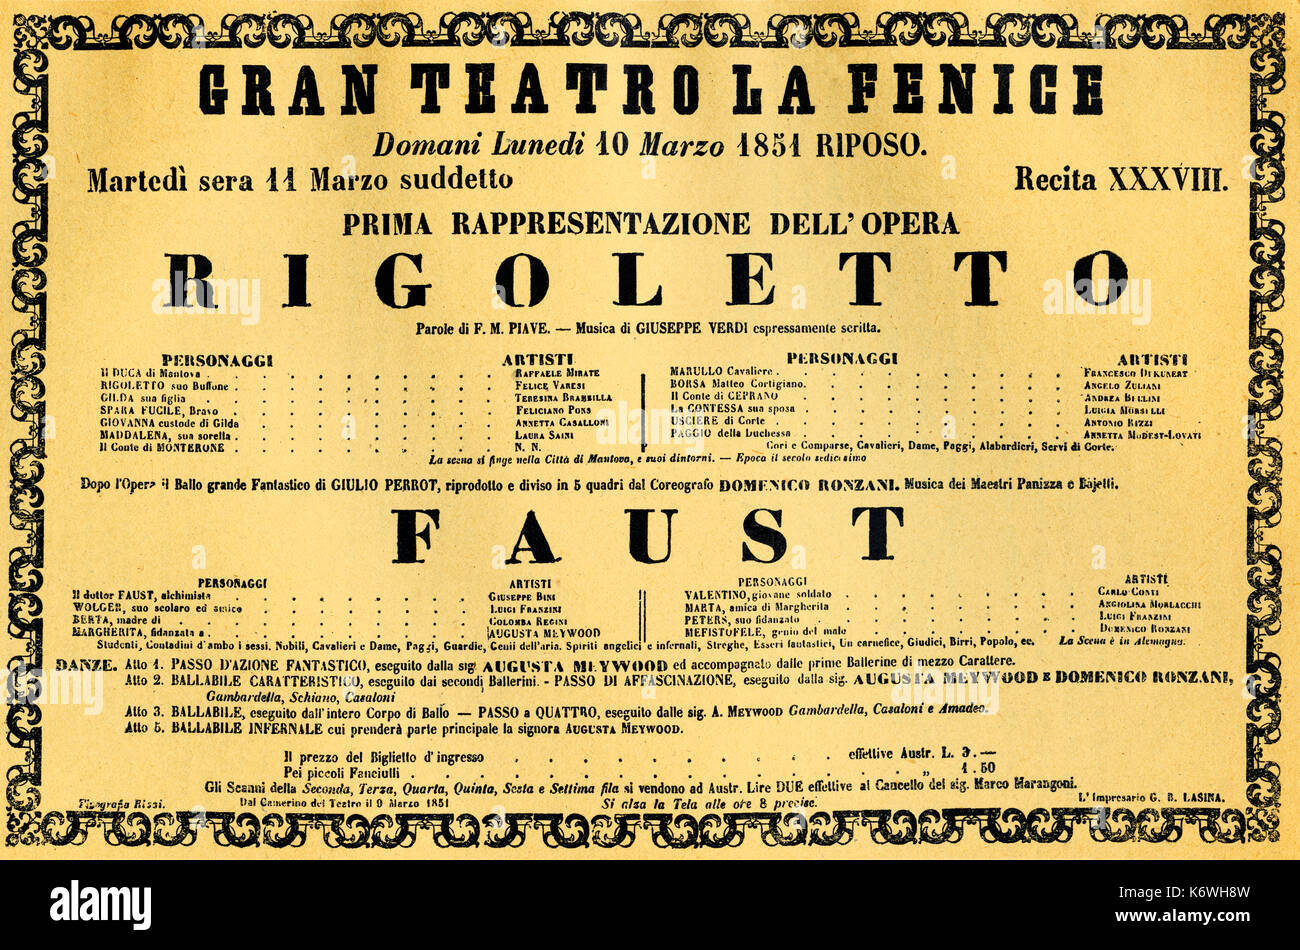 VERDI, Giuseppe -Rigoletto premiere 11 March 1851 poster for La Fenice in Venice. Italian composer (1813-1901) BOOK: Verdi - e la fenice, pg32 Stock Photo